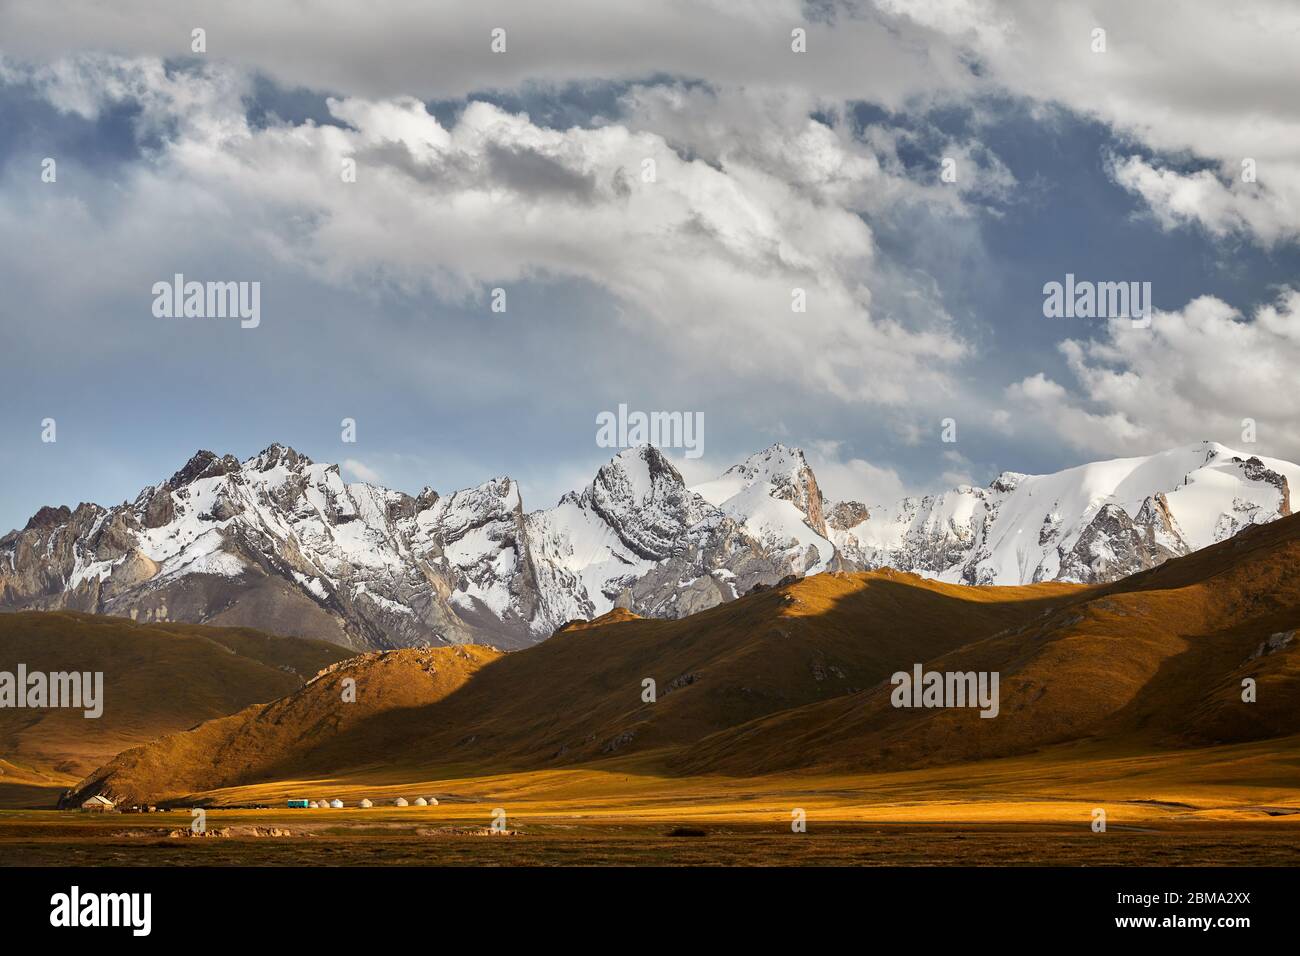 De beaux paysages de montagnes aux sommets enneigés et camp de yourte dans la vallée près de Kel Suu Lake dans la région de Naryn, Kirghizistan Banque D'Images